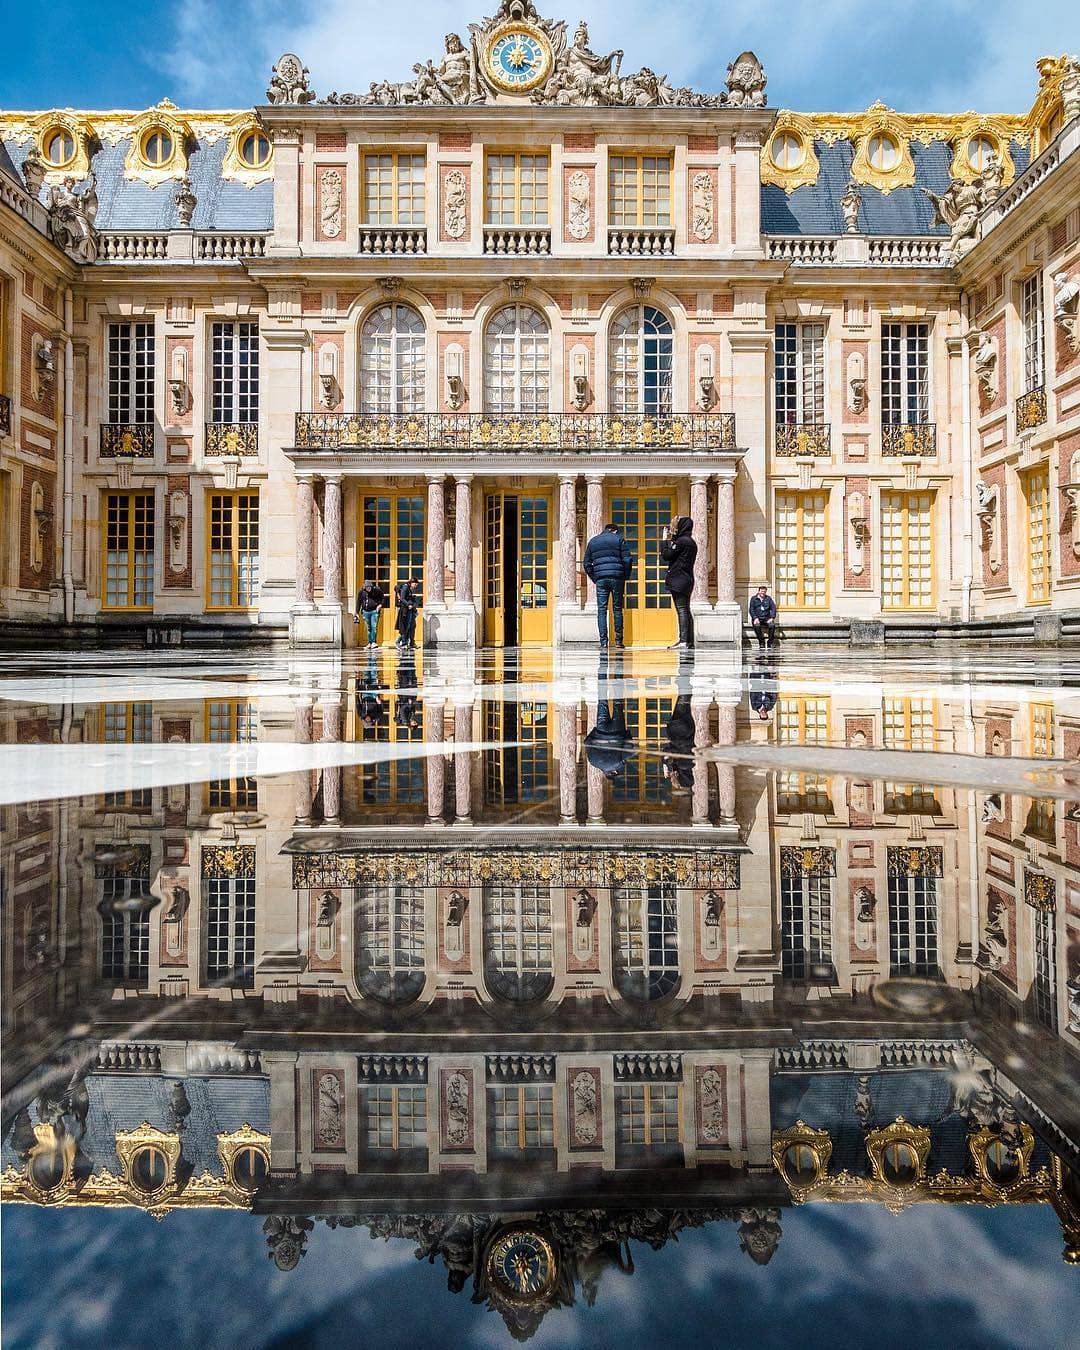 Версаль букв. Версаль дворец Франция. Дворцовый комплекс Версаль. Версаль дворцово-парковый ансамбль во Франции. Версальский дворец пригород Парижа Франция.